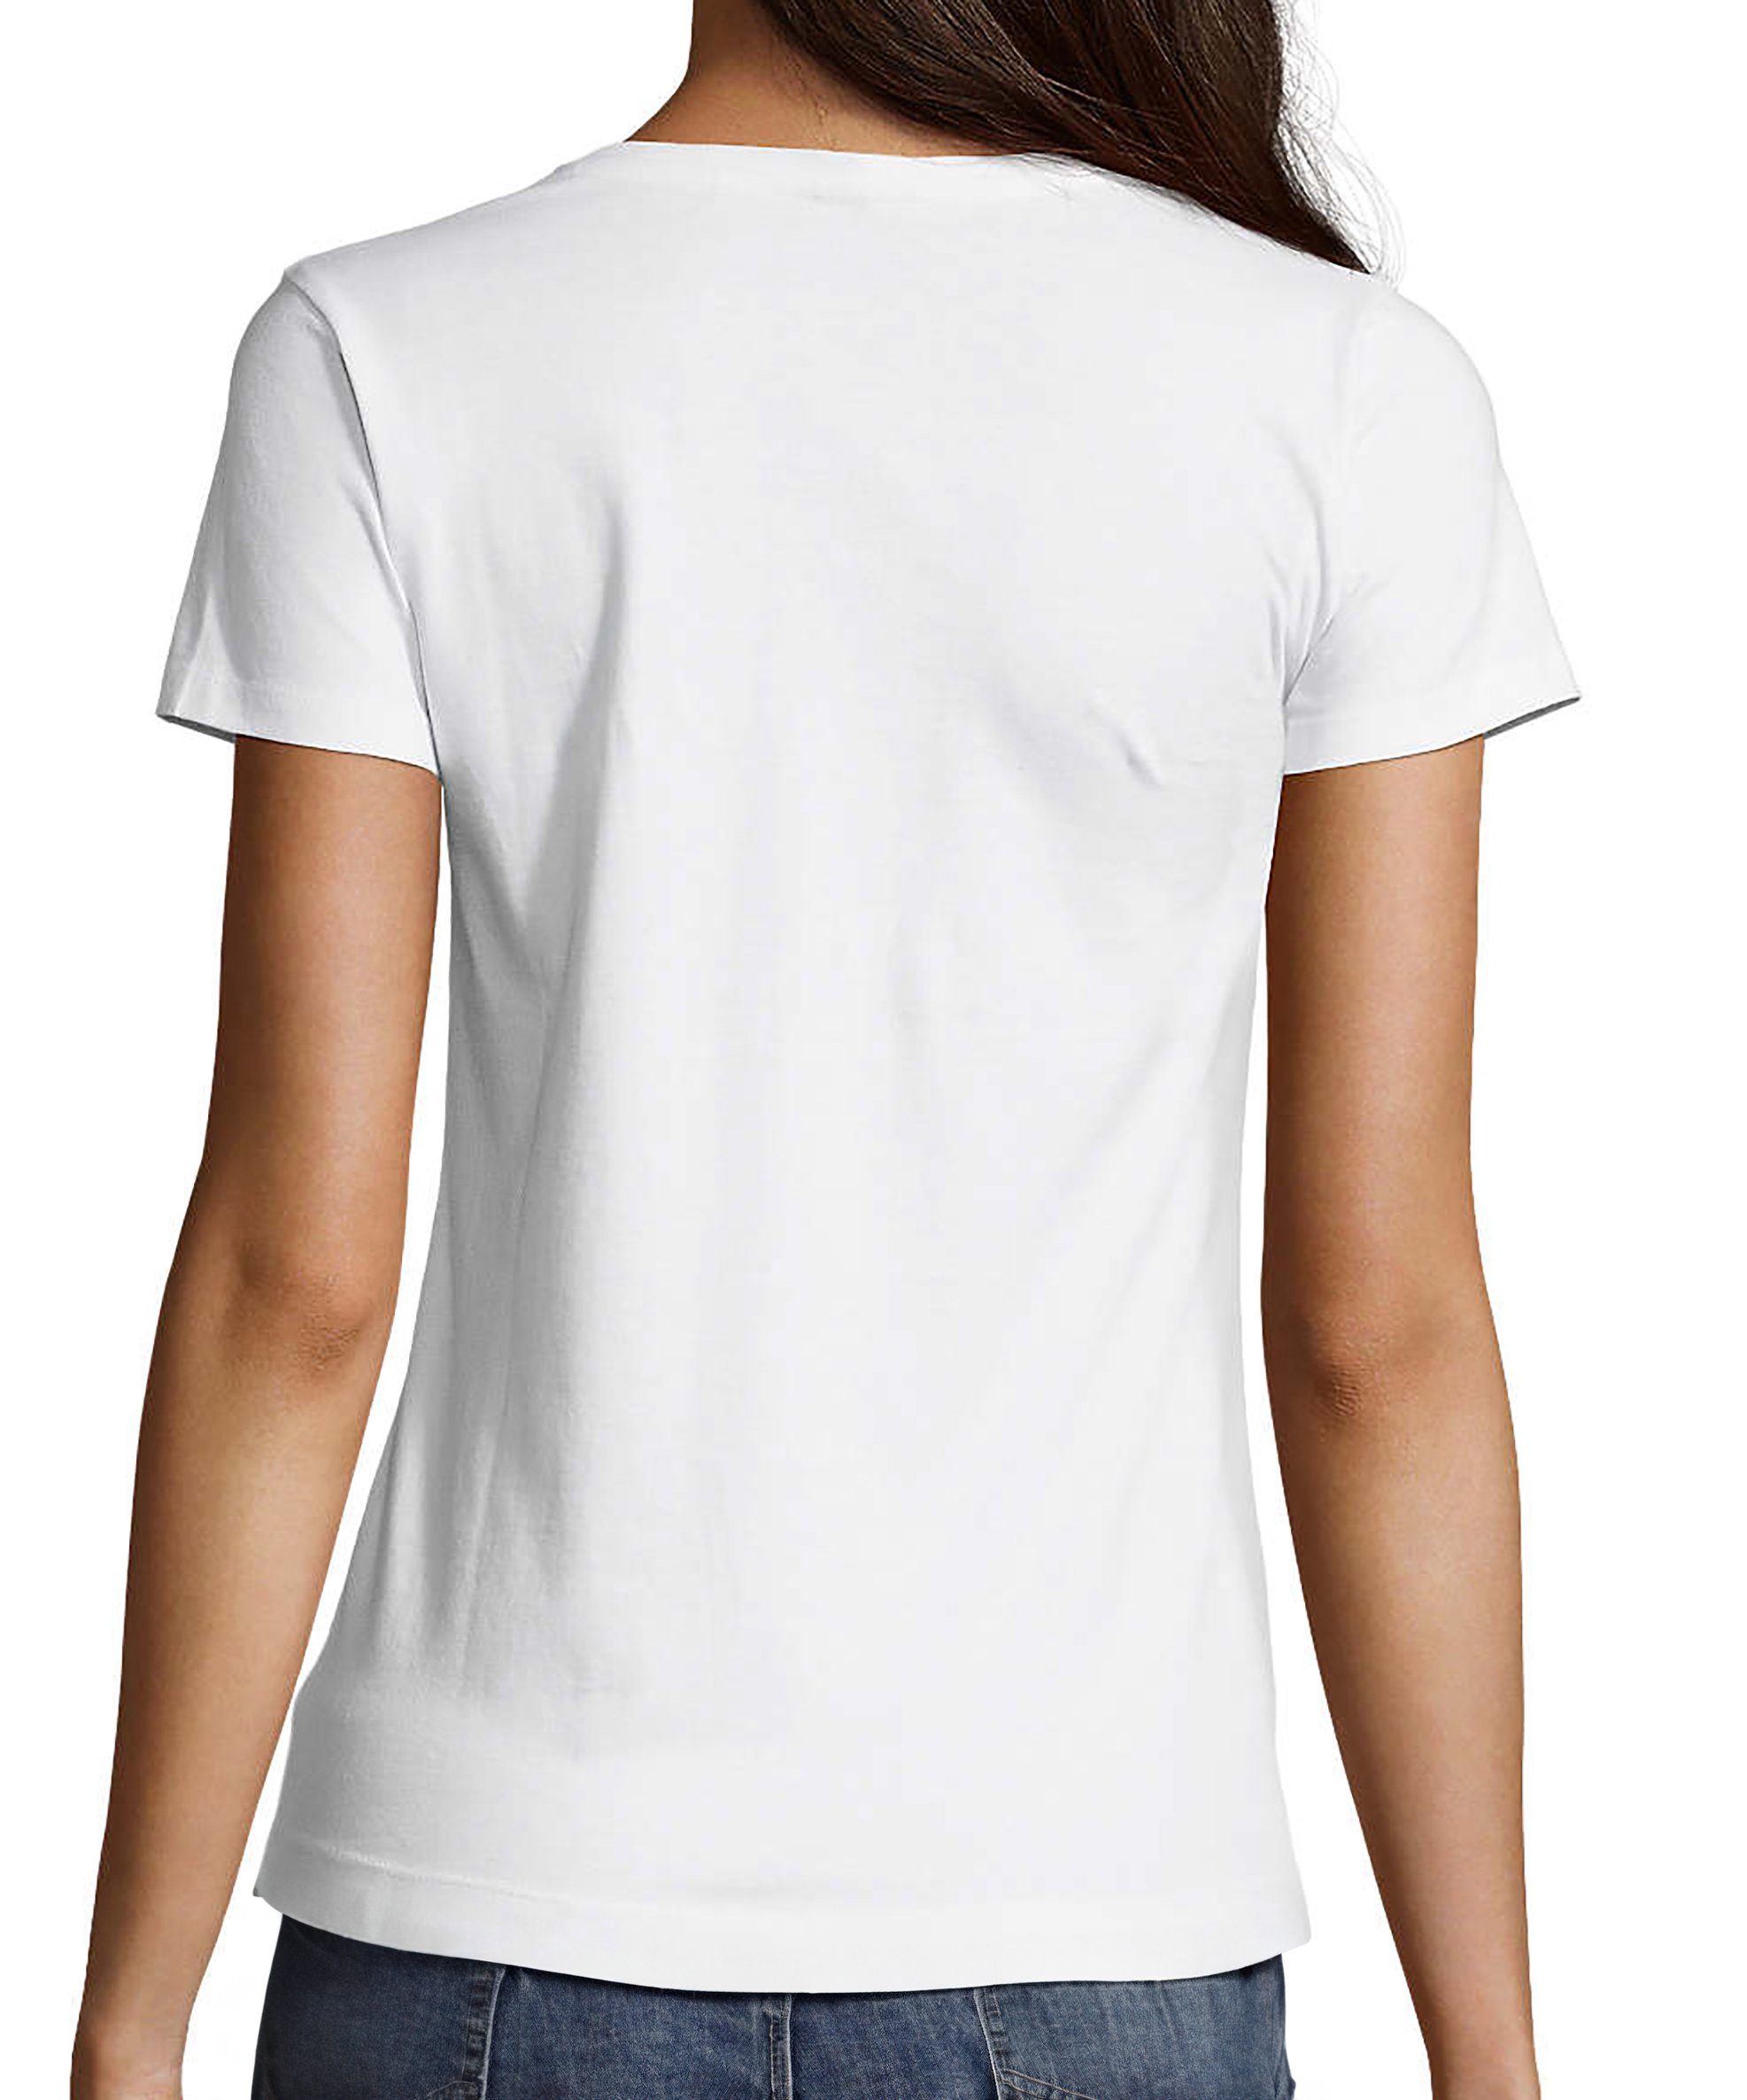 Shirt MyDesign24 mit T-Shirt Slim Aufdruck V-Ausschnitt i262 Print Wildtier Damen Baumwollshirt - weiss Fit, Baby Eichhörnchen